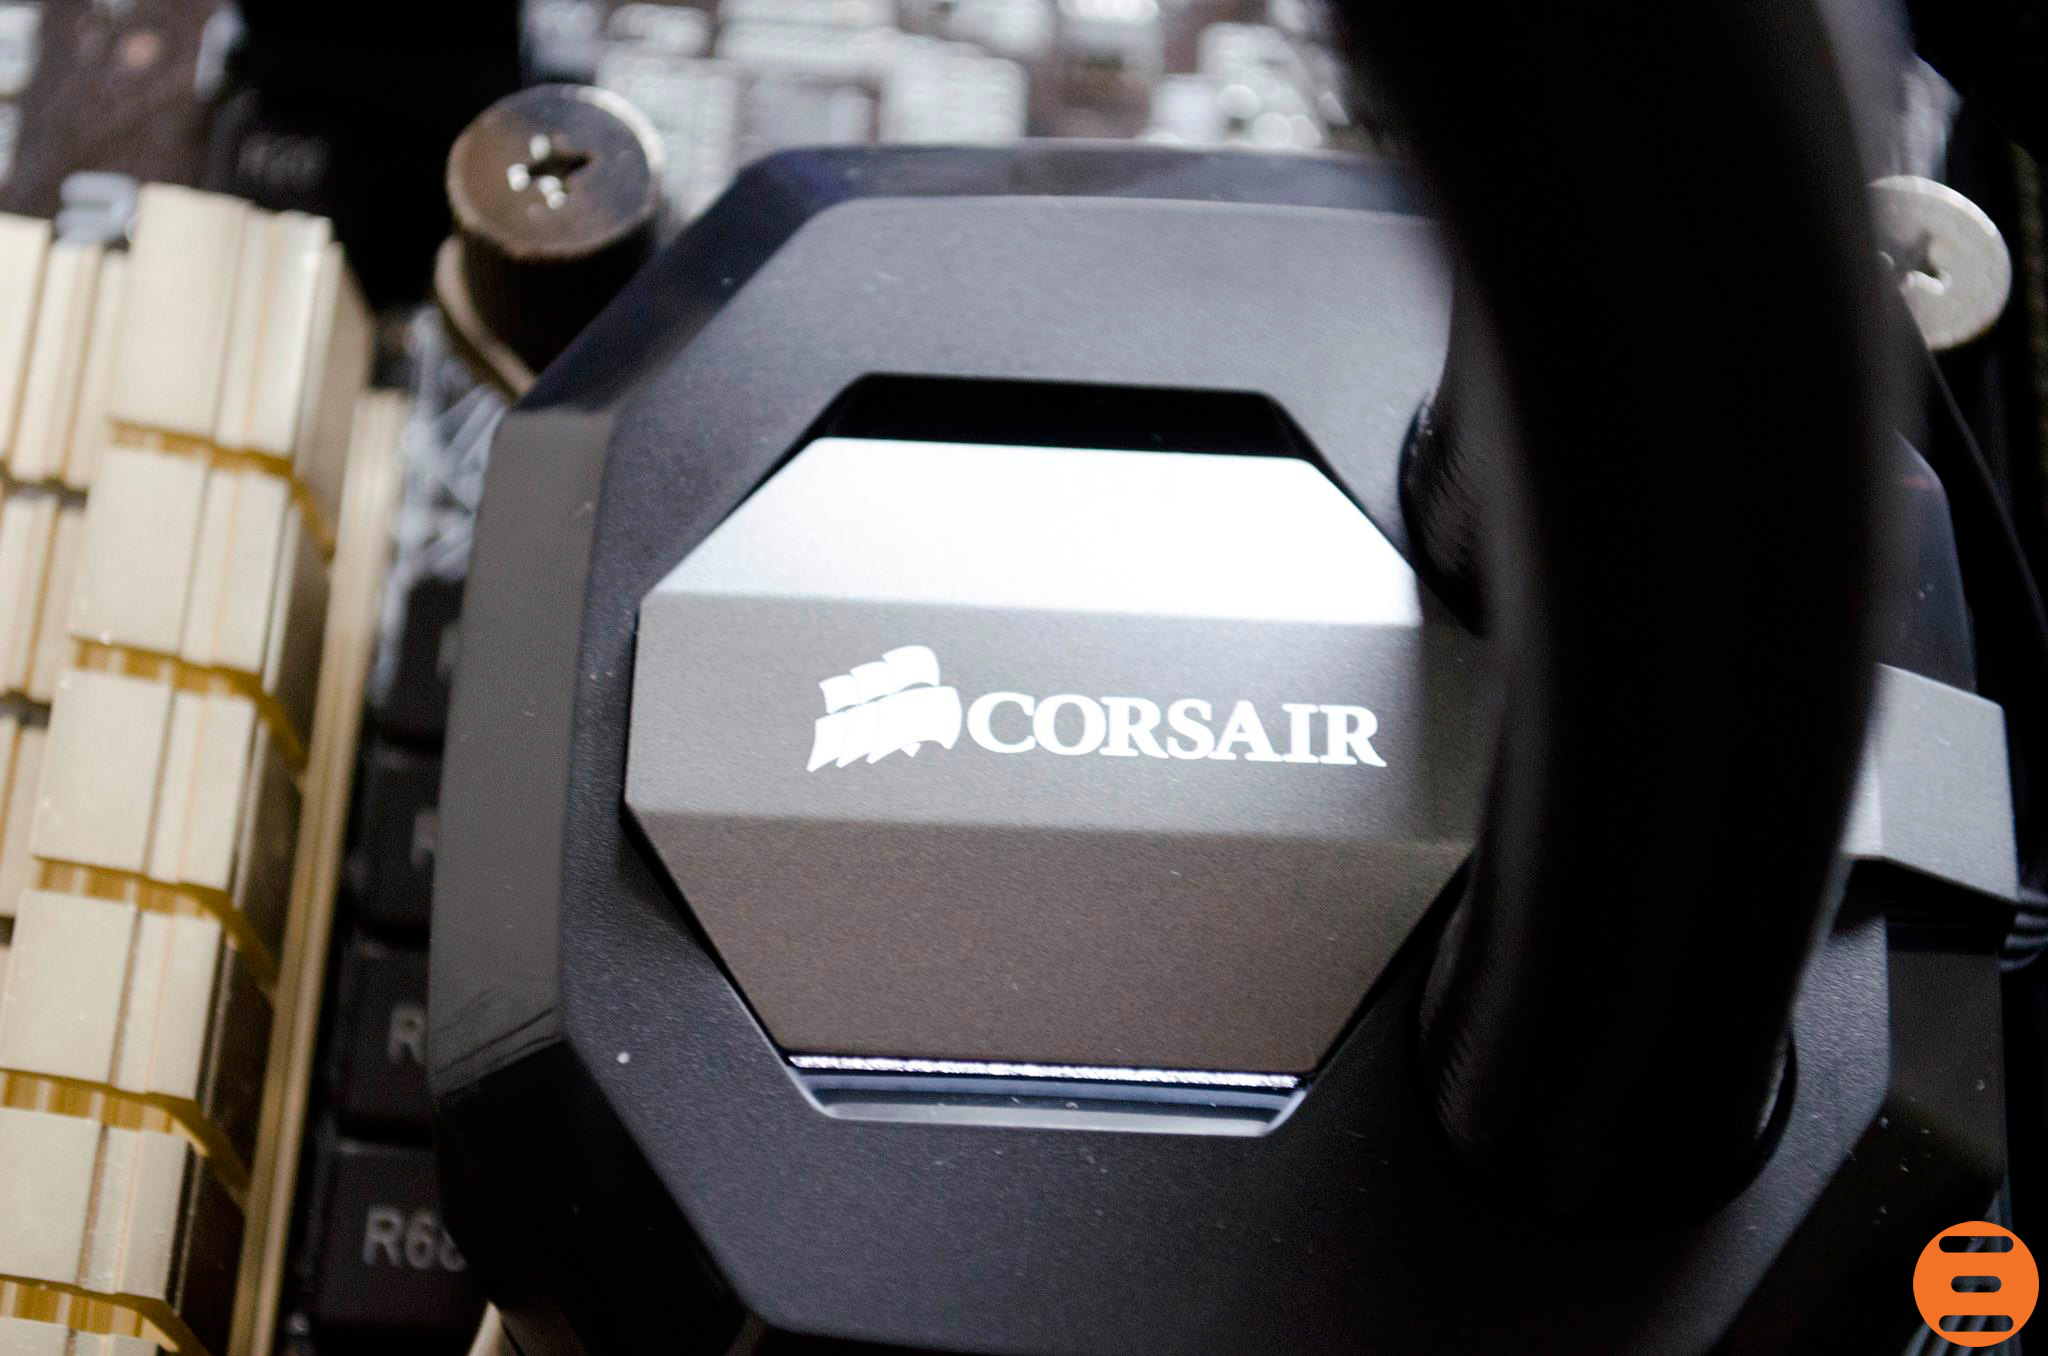 Corsair-H100i-GTX-AIO-CPU-Cooler_20